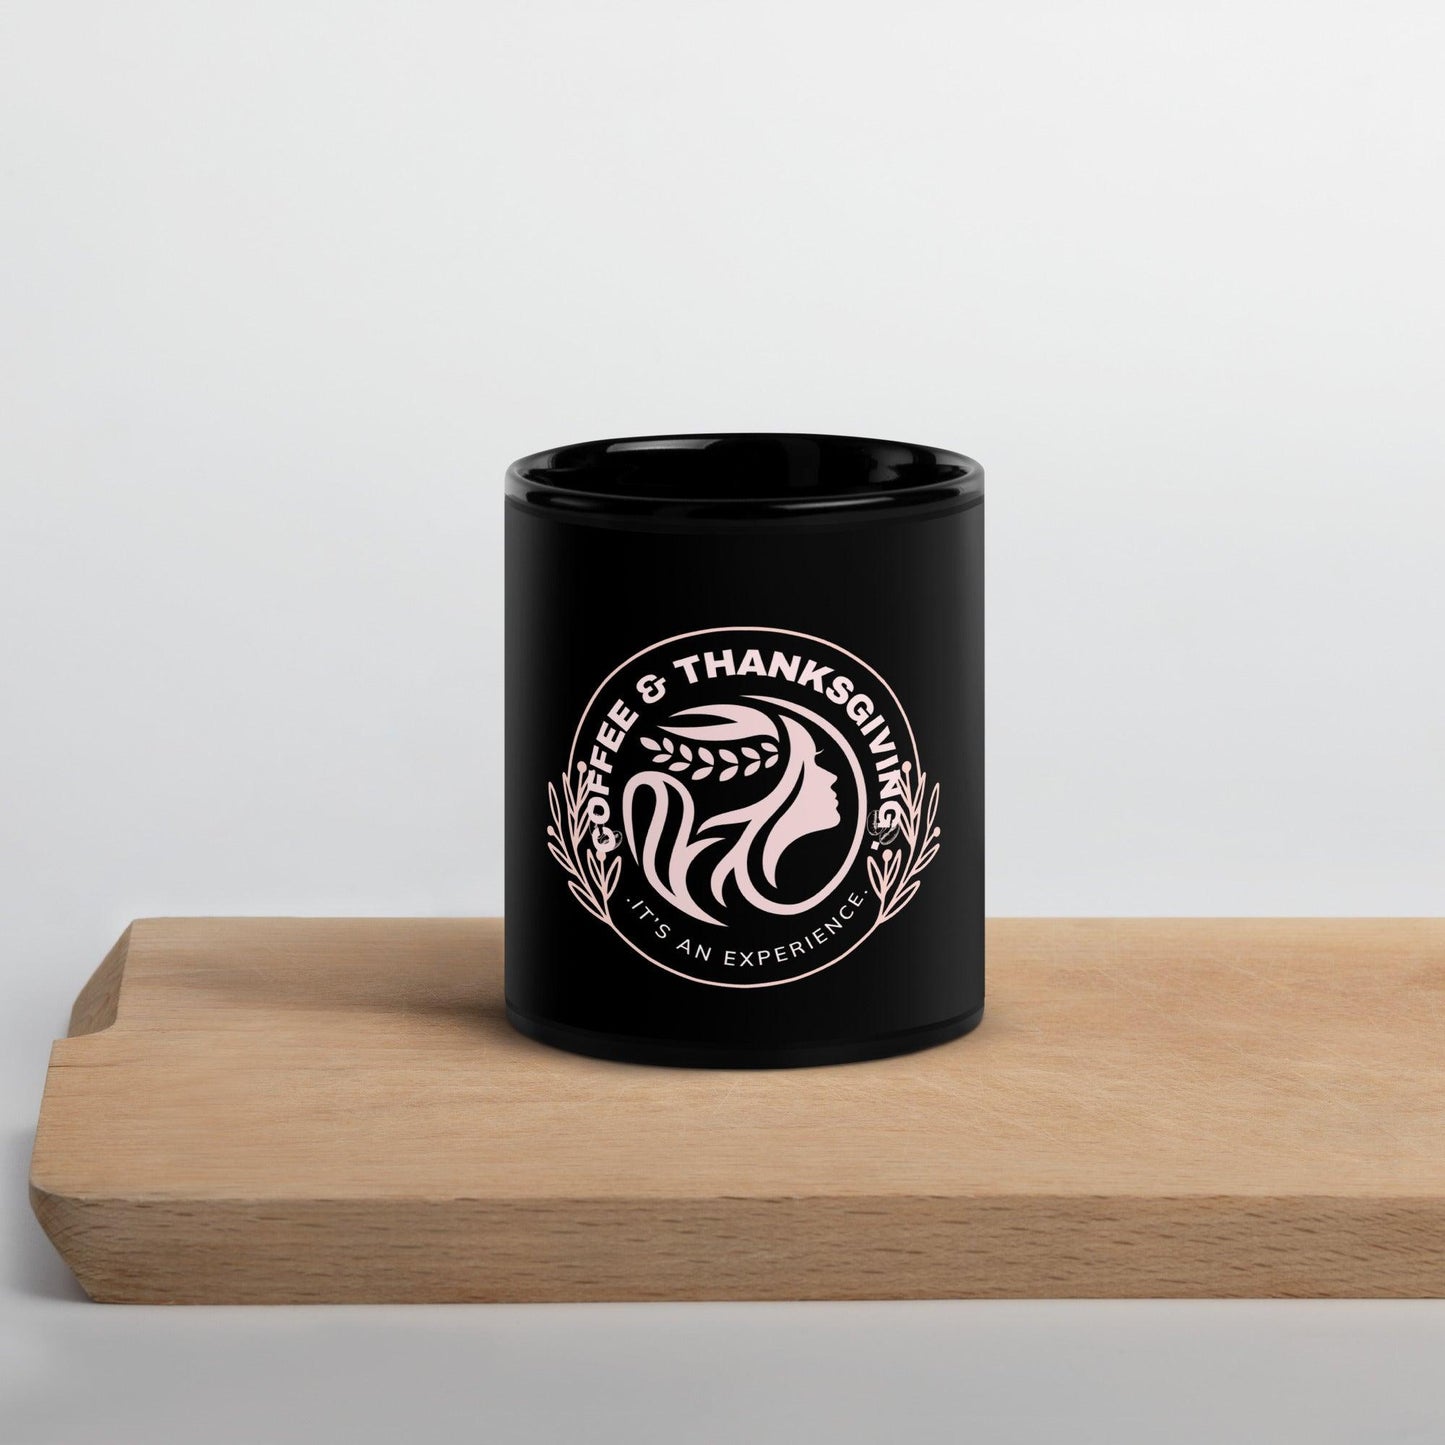 Luxury Black Glossy Mug For Thanksgiving - COFFEEBRE